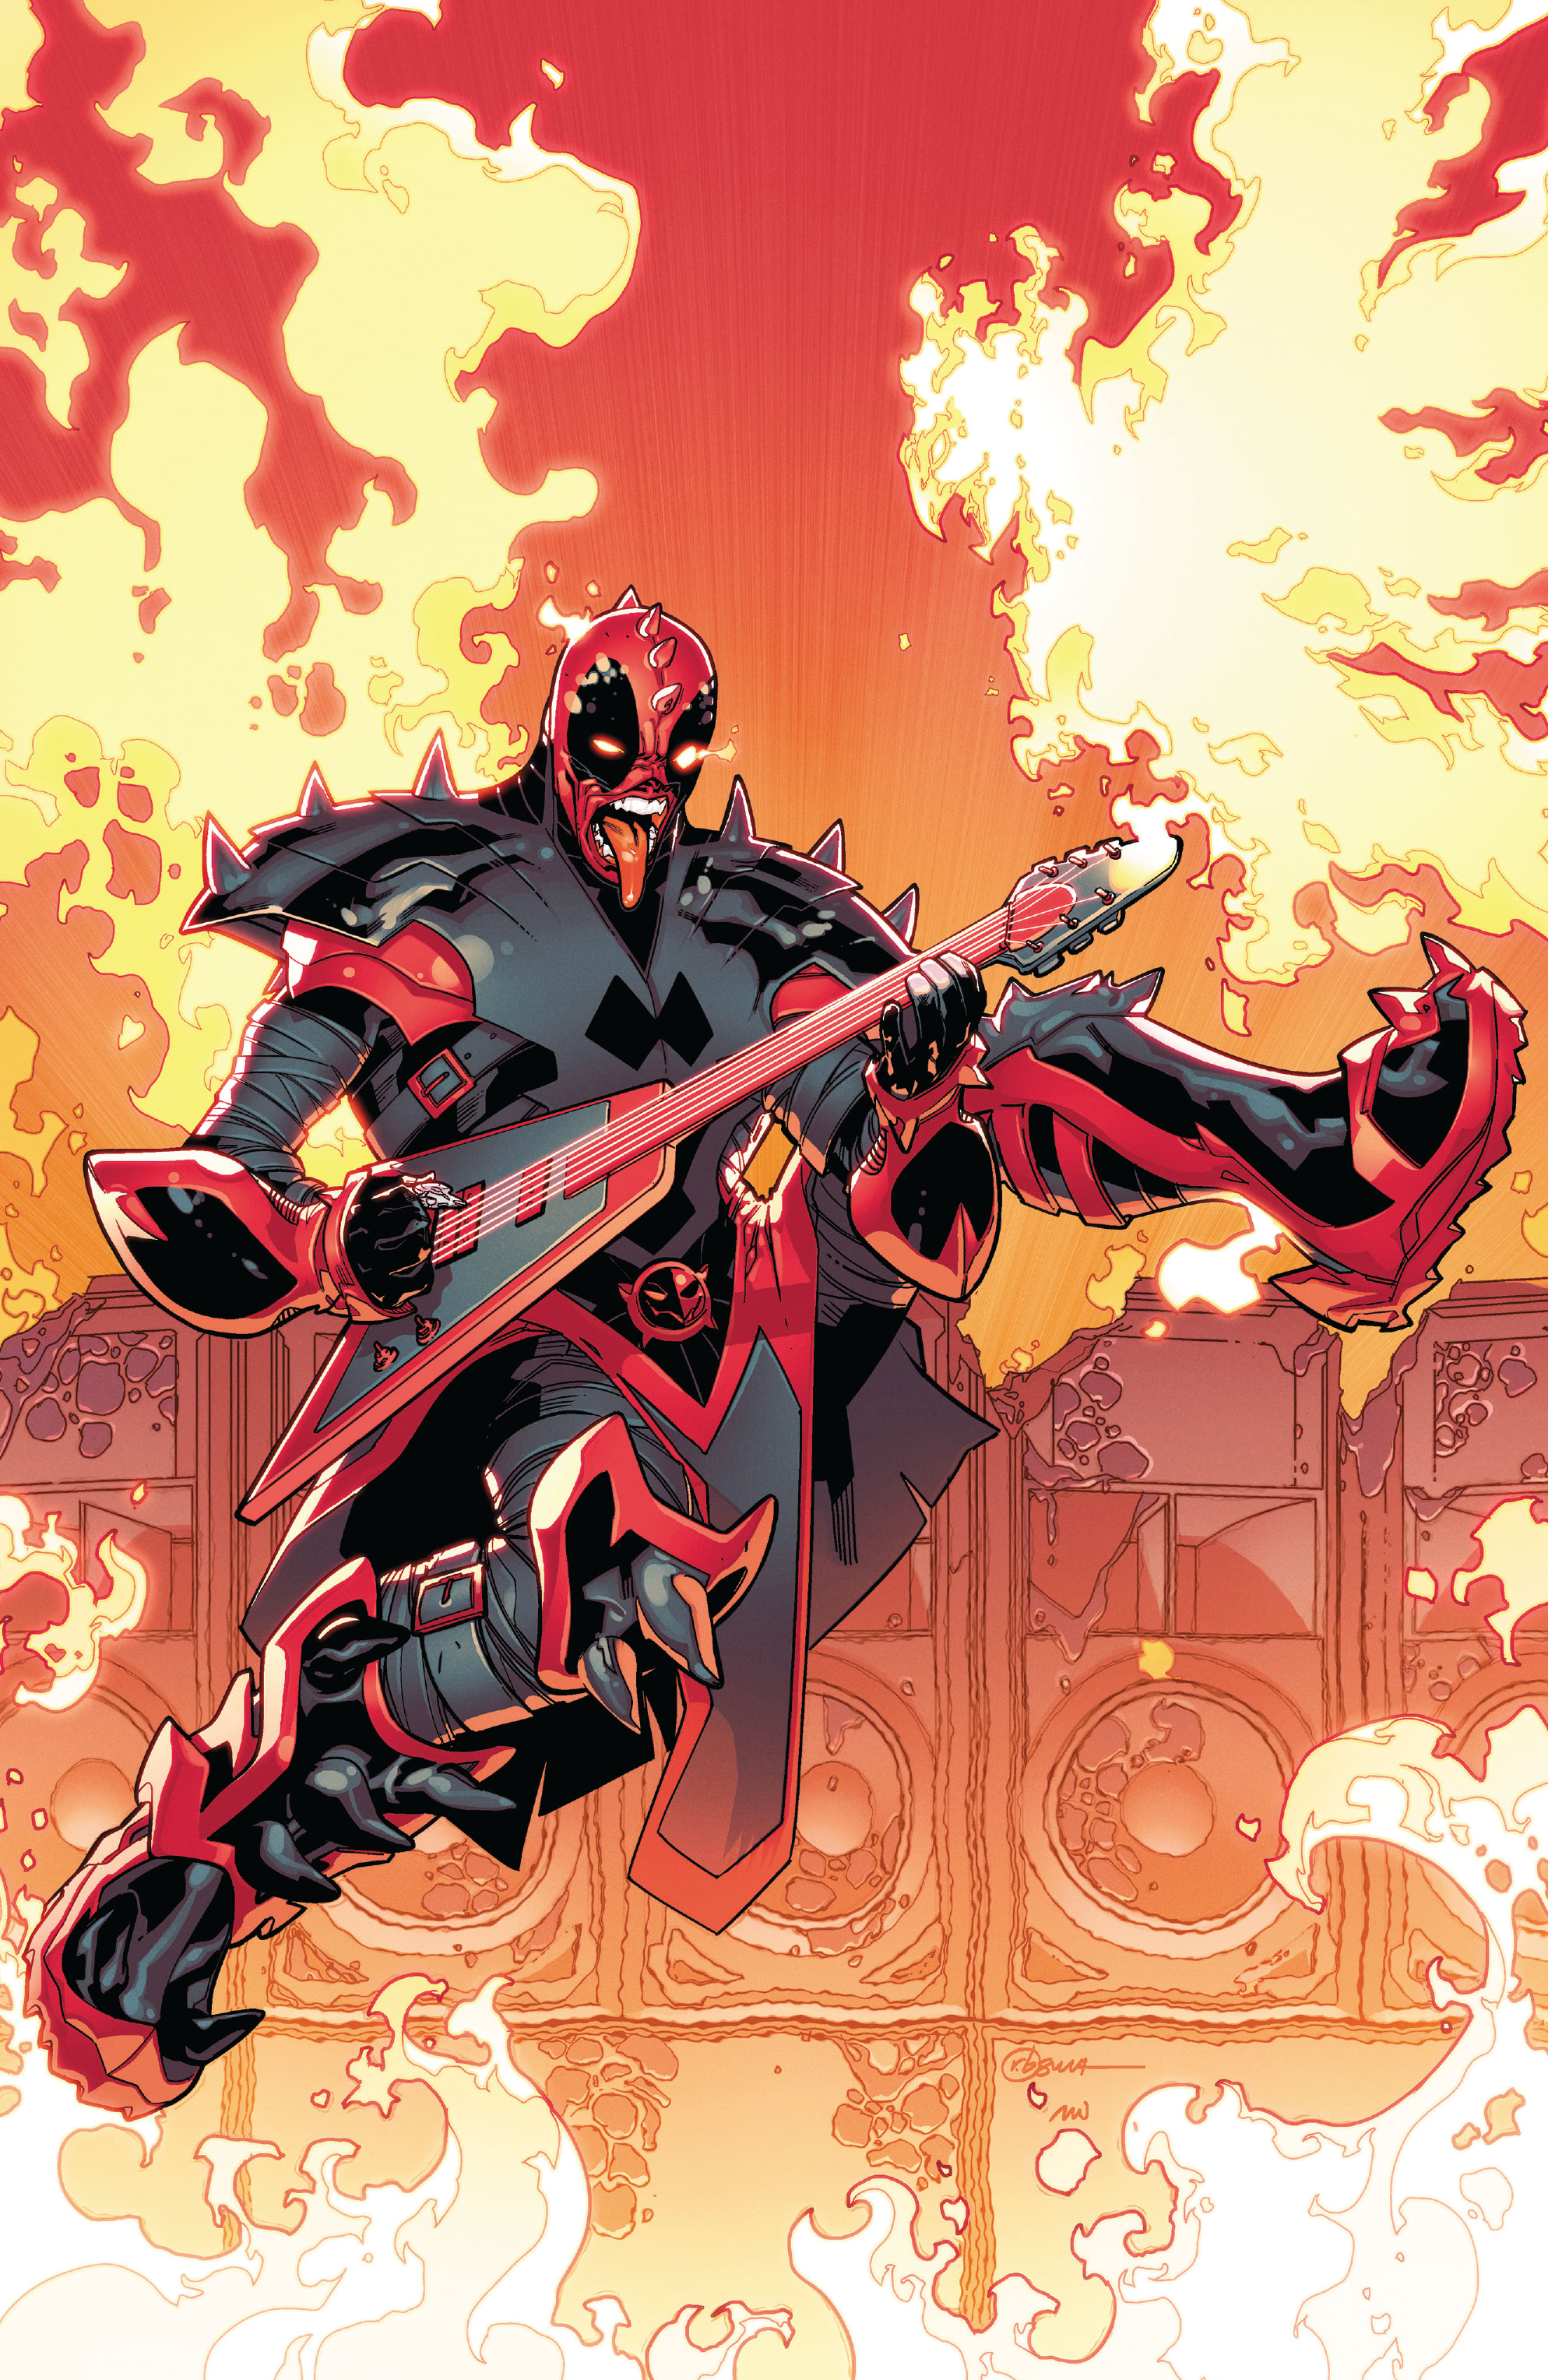 Despicable Deadpool #291  Marvel Comics CB16387 